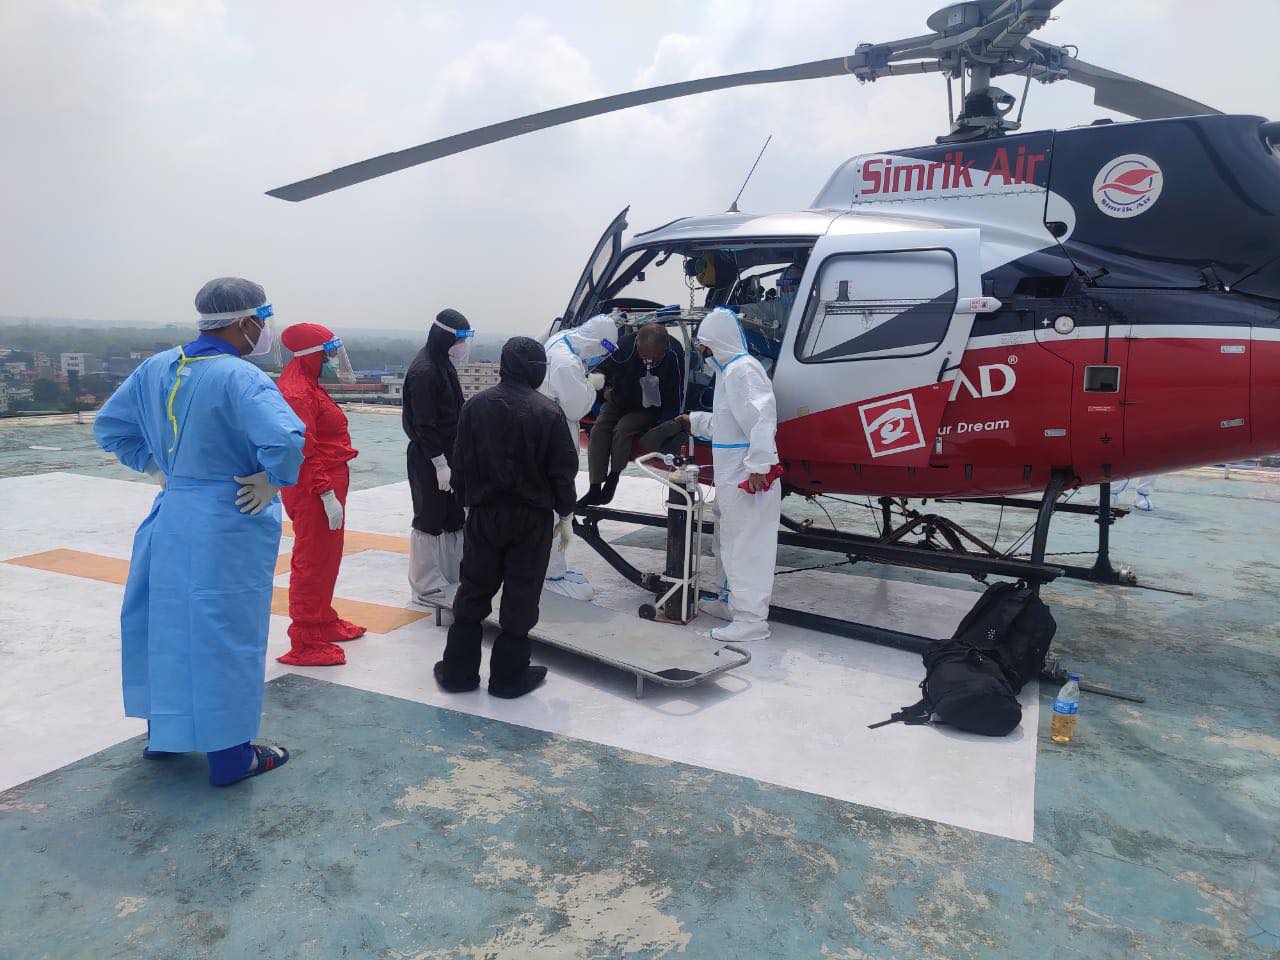 सिम्रिकको हेलिकप्टरबाट बिरामीलाई बिएन्डसी अस्पतालमा झारिँदै। तस्बिर: सेतोपाटी